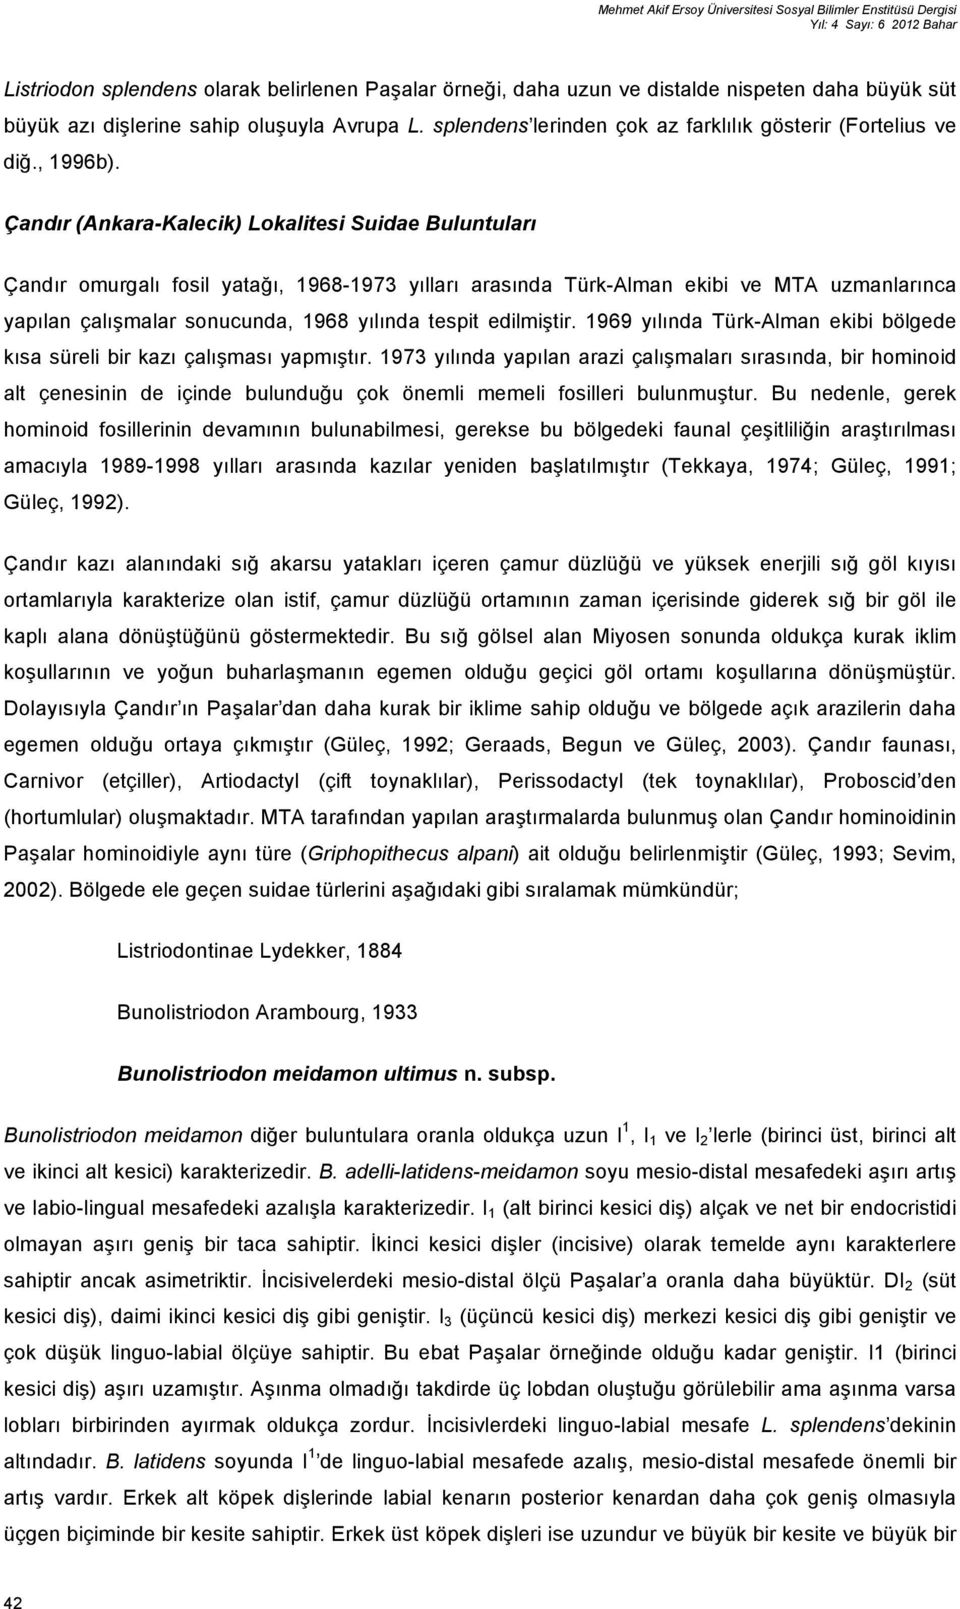 Çandır (Ankara-Kalecik) Lokalitesi Suidae Buluntuları Çandır omurgalı fosil yatağı, 1968-1973 yılları arasında Türk-Alman ekibi ve MTA uzmanlarınca yapılan çalışmalar sonucunda, 1968 yılında tespit